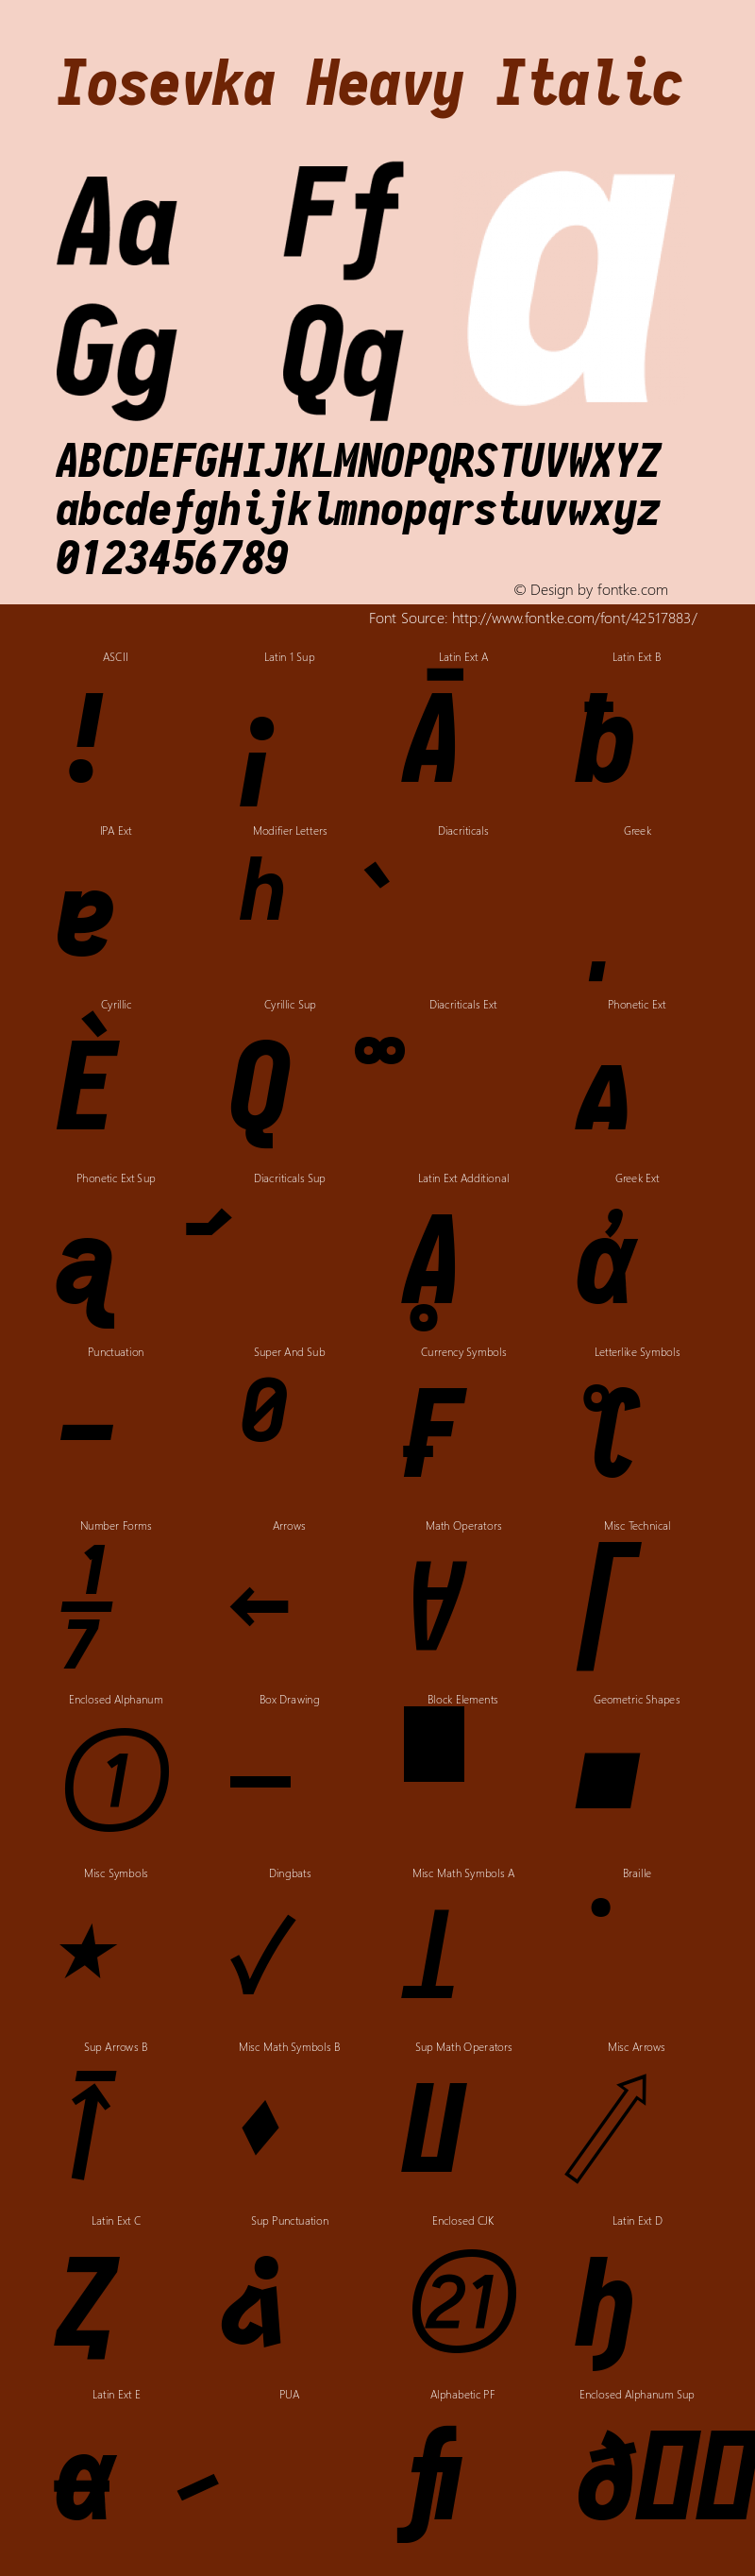 Iosevka Type Heavy Italic 2.3.2; ttfautohint (v1.8.3)图片样张